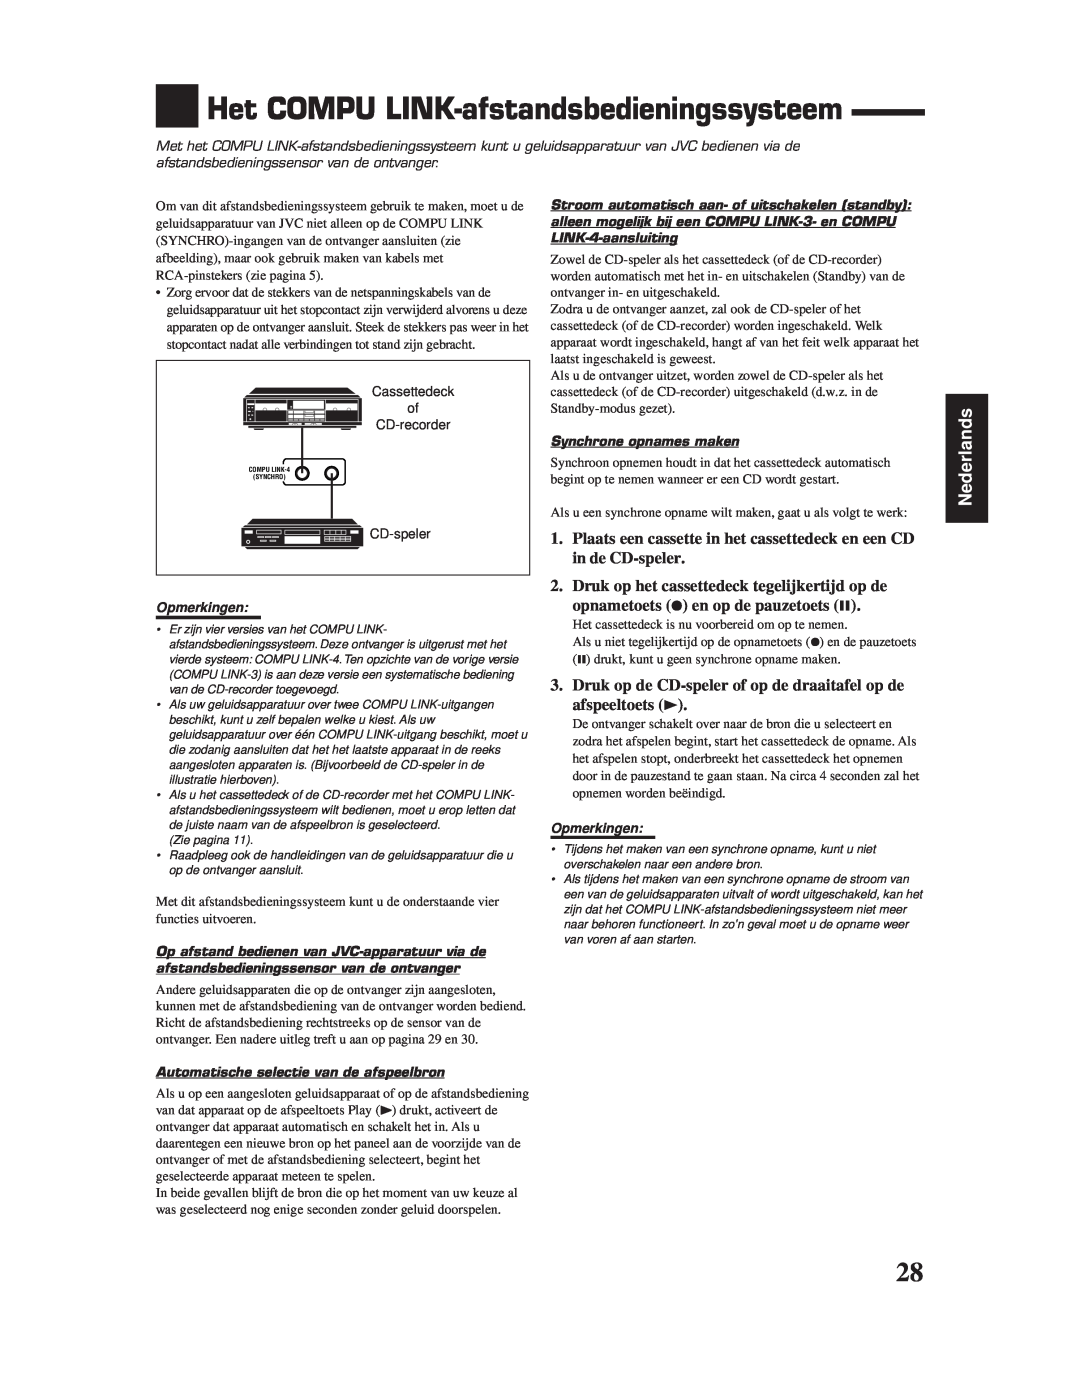 JVC RX-6010RBK Het COMPU LINK-afstandsbedieningssysteem, Nederlands, Opmerkingen, Automatische selectie van de afspeelbron 